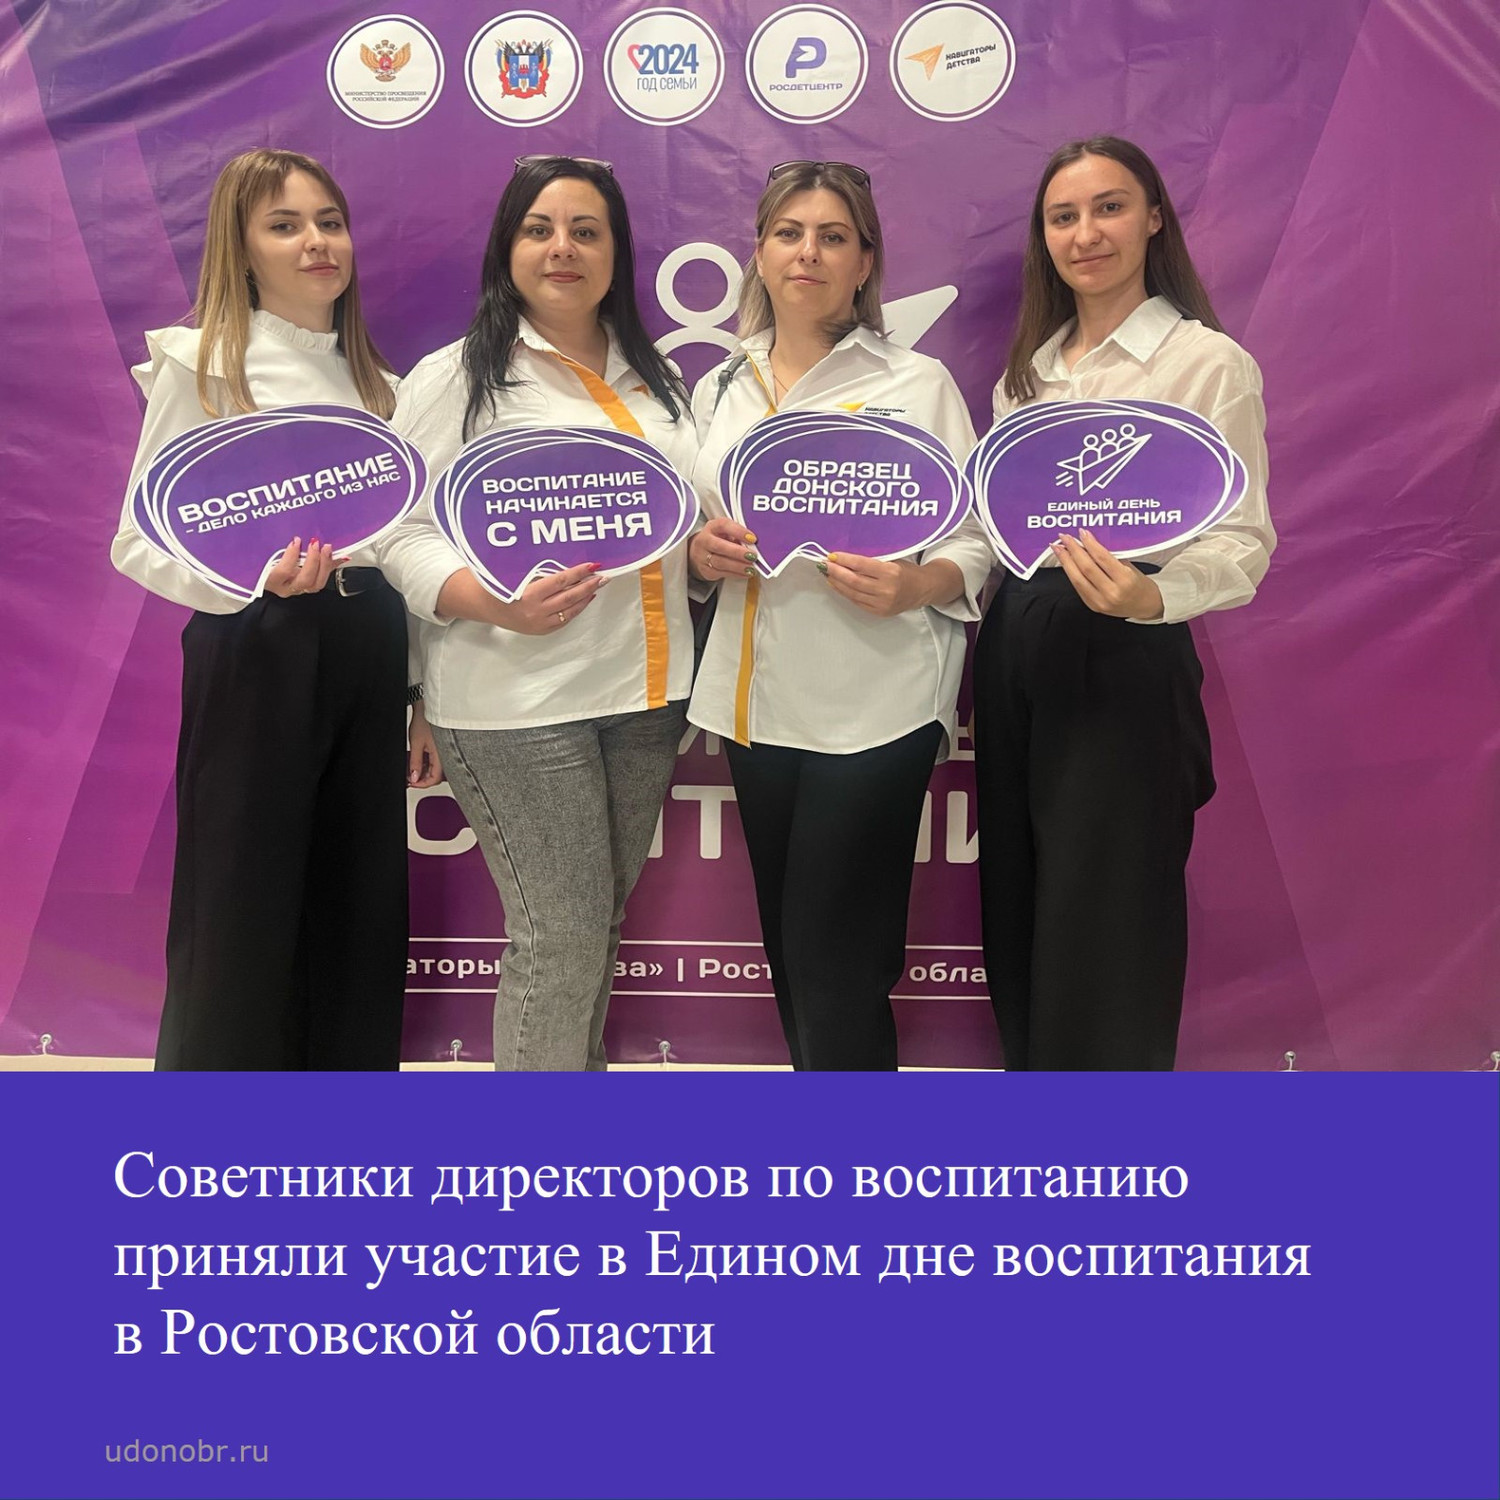 Советники директоров по воспитанию приняли участие в Едином дне воспитания в Ростовской области